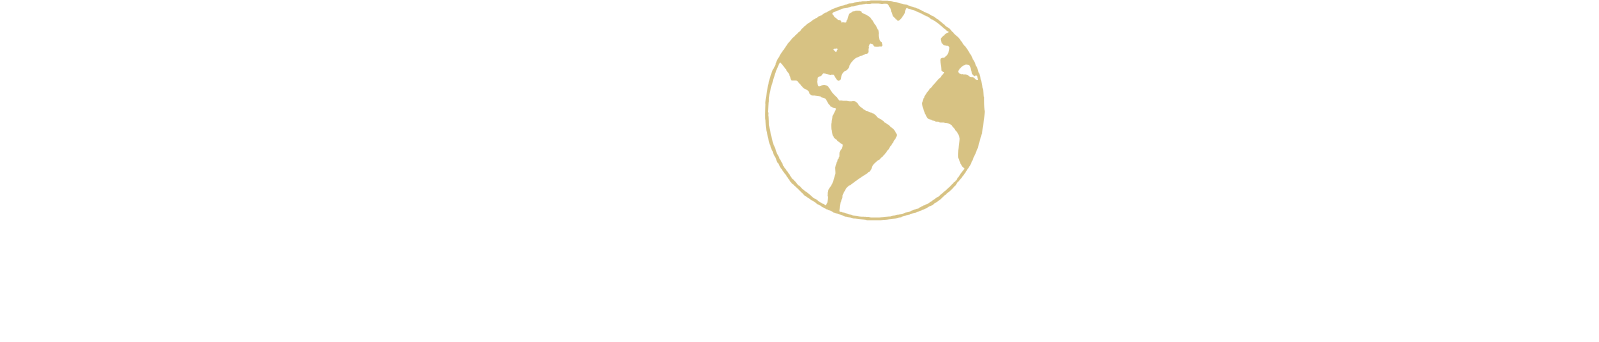 Seaboard logo large for dark backgrounds (transparent PNG)